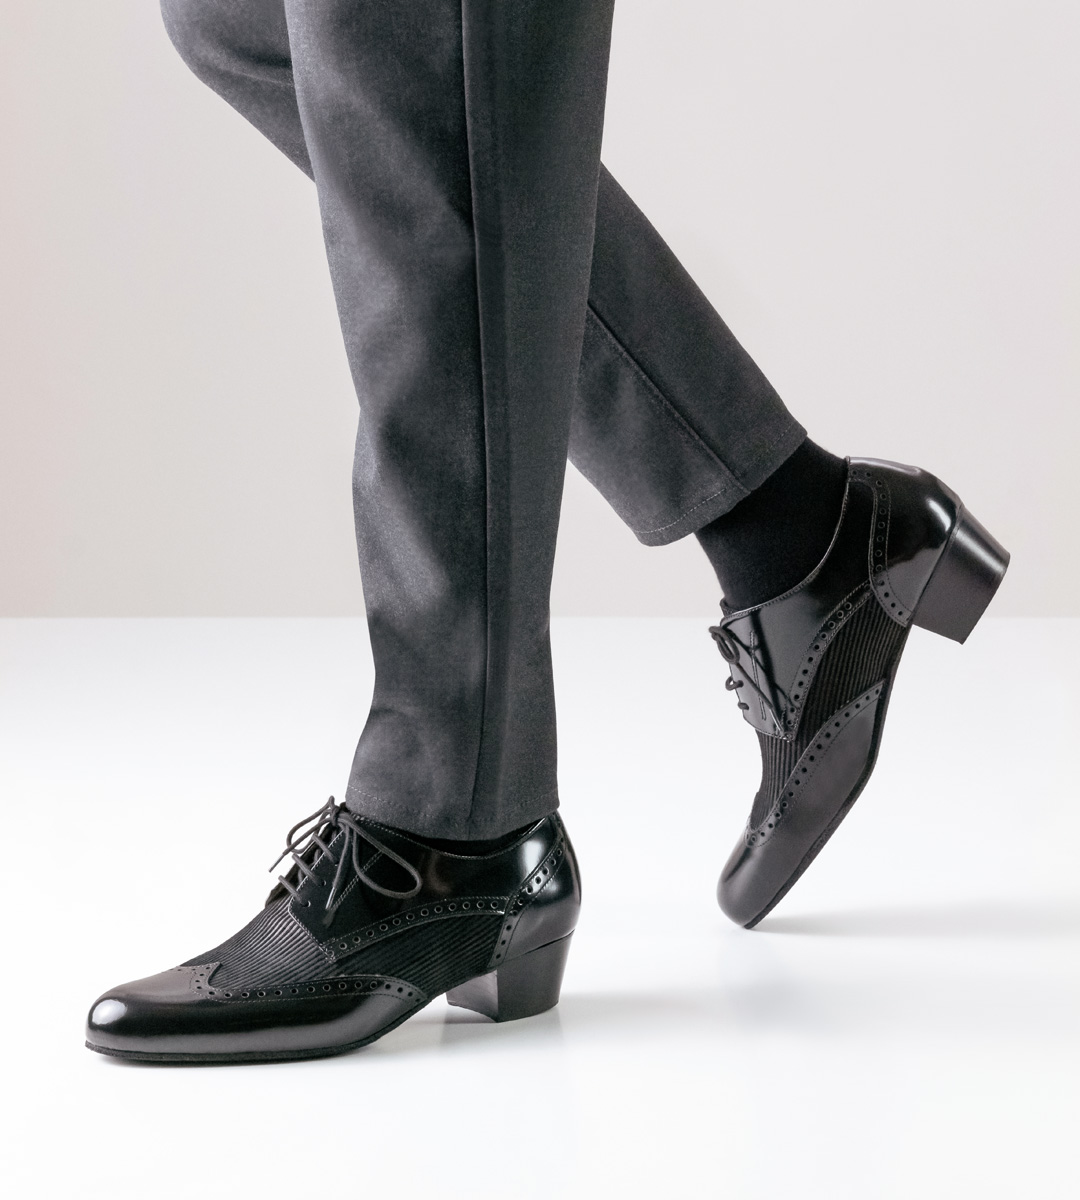 4 cm high Nueva Epoca men's dance shoe in combination with grey trousers